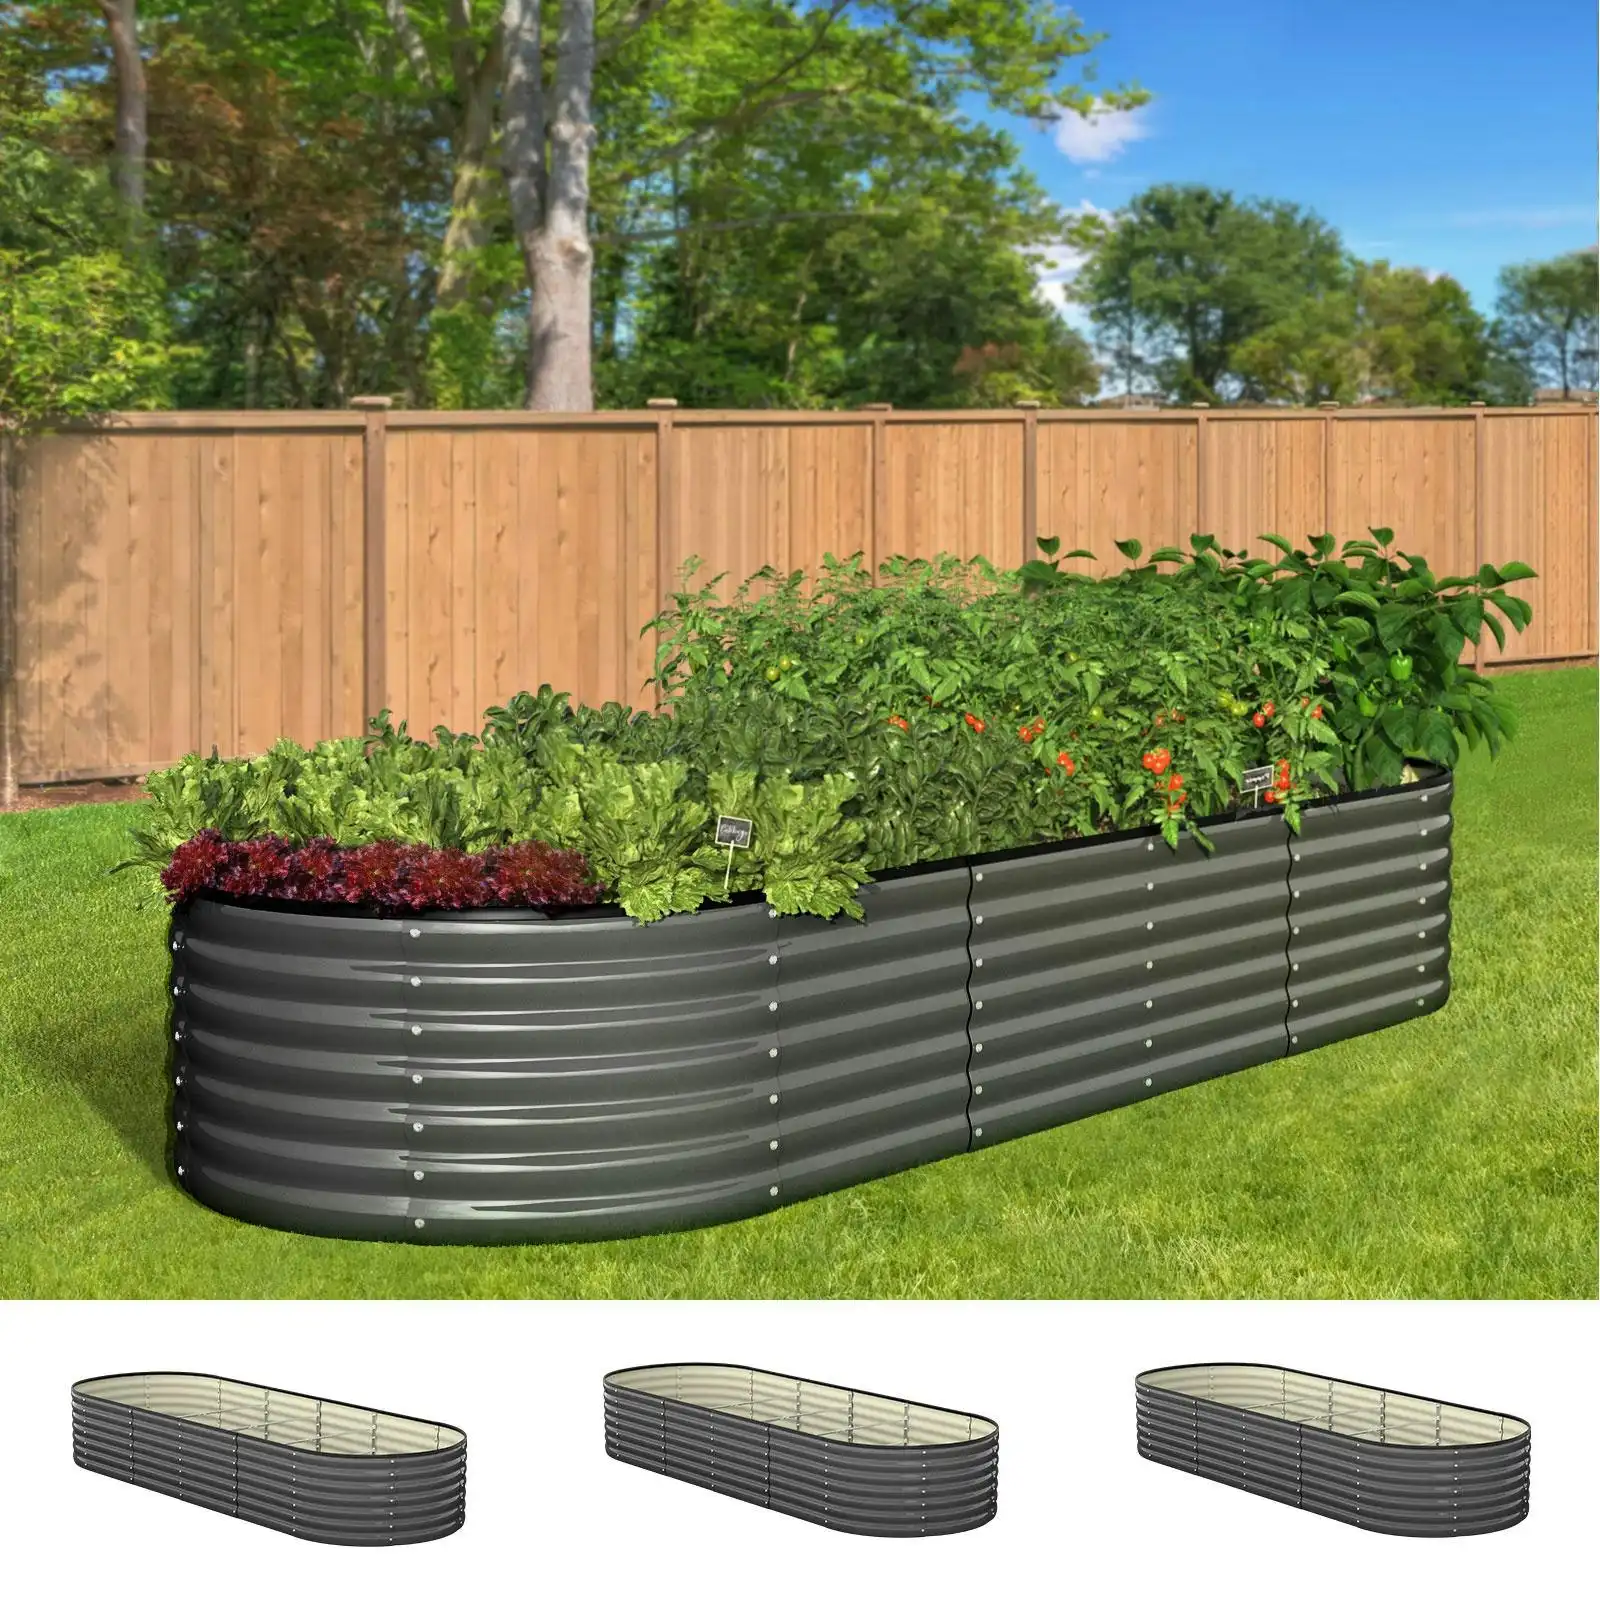 Livsip x3 Raised Garden Bed Kit Planter Oval Galvanised Steel 240cmX80cmX56cm